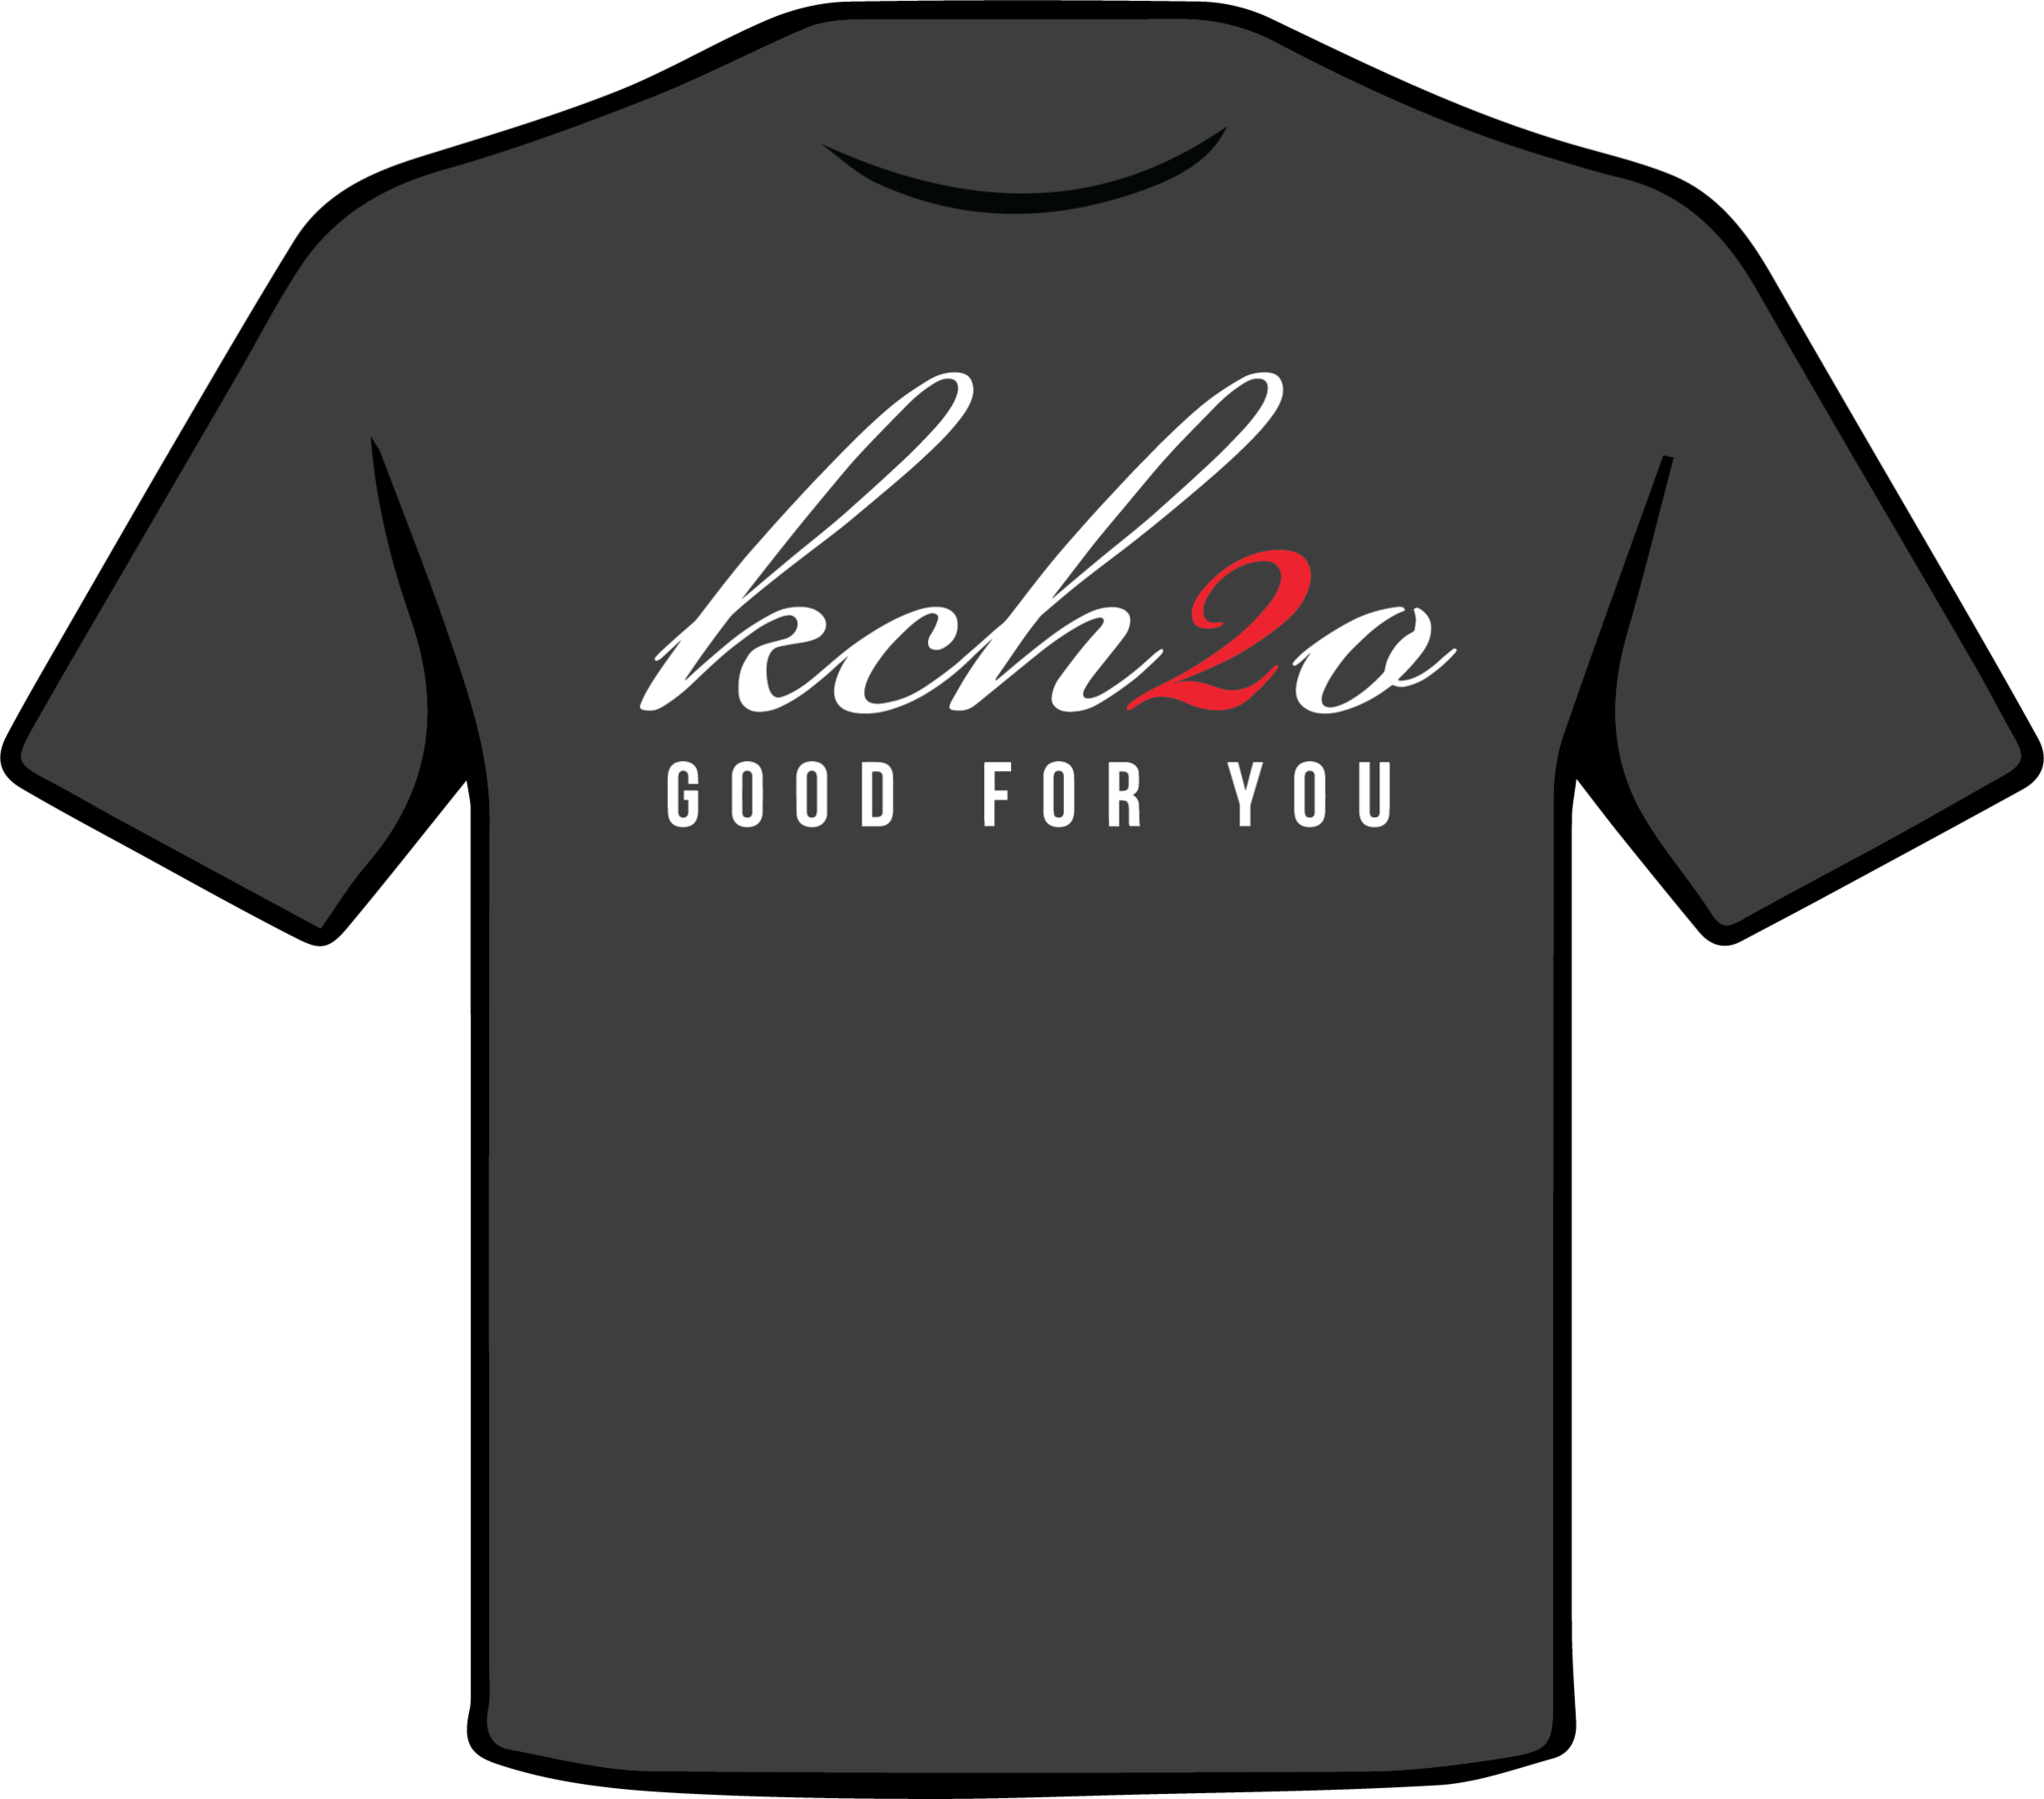 Kch2o Good For You Women's T-Shirt